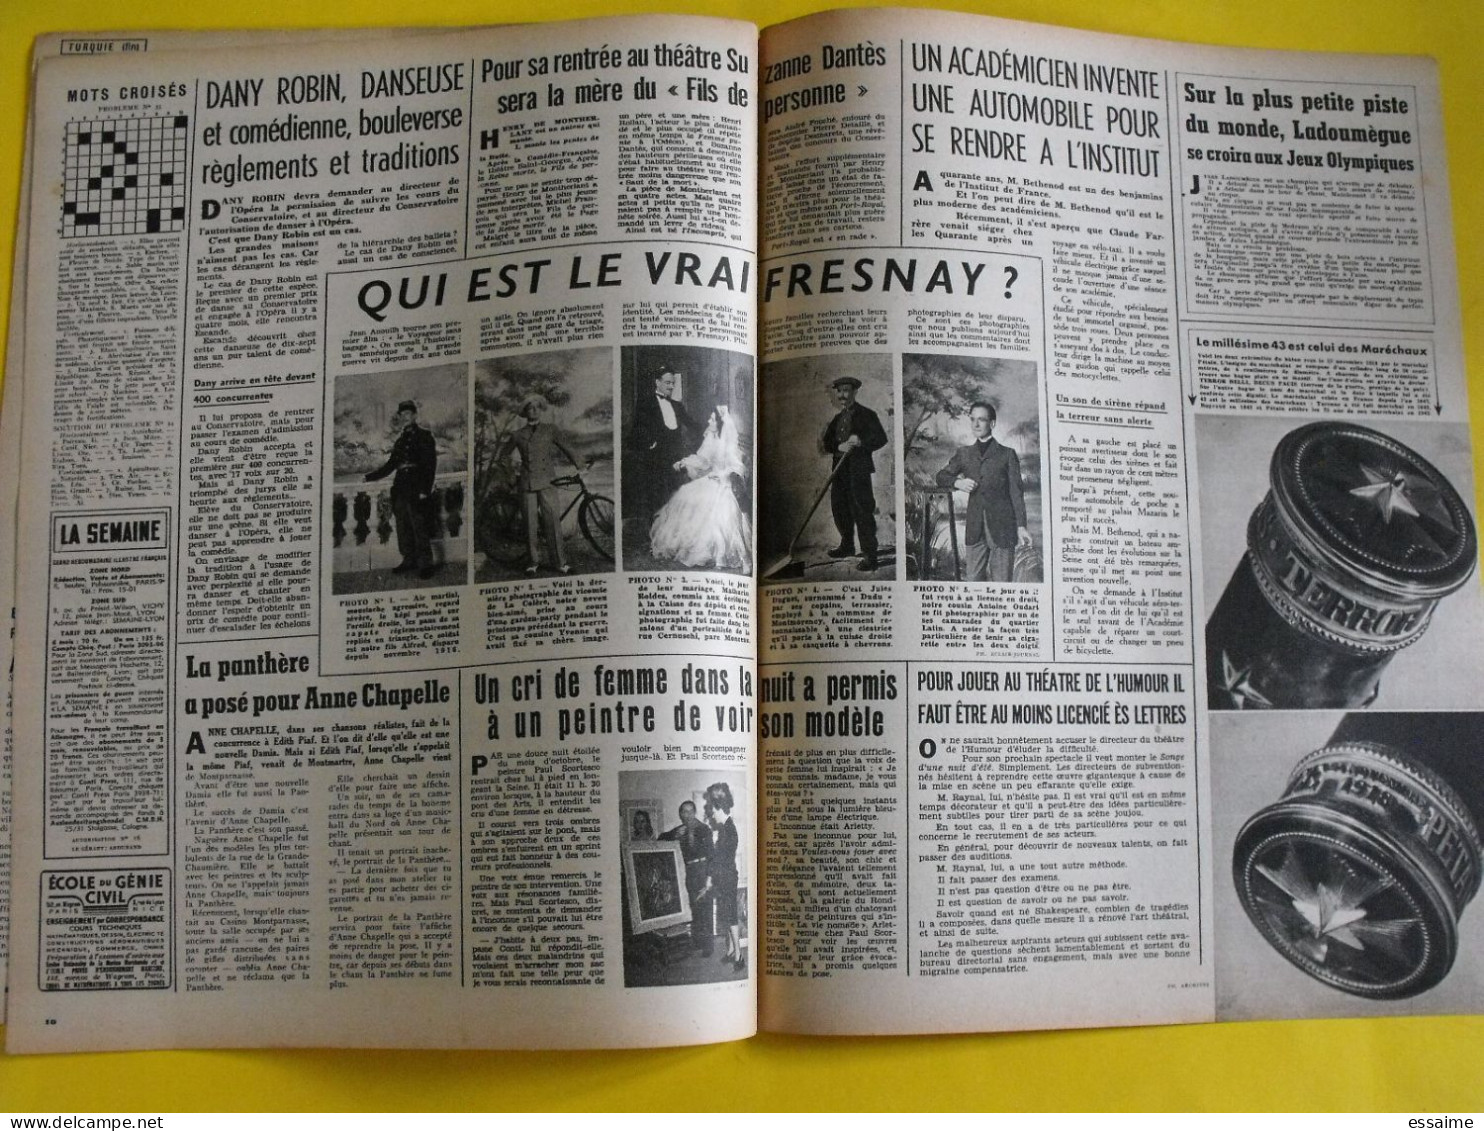 6 revues La semaine de 1943. actualités guerre photos collaboration greta garbo menton mussolini pacifique nantes